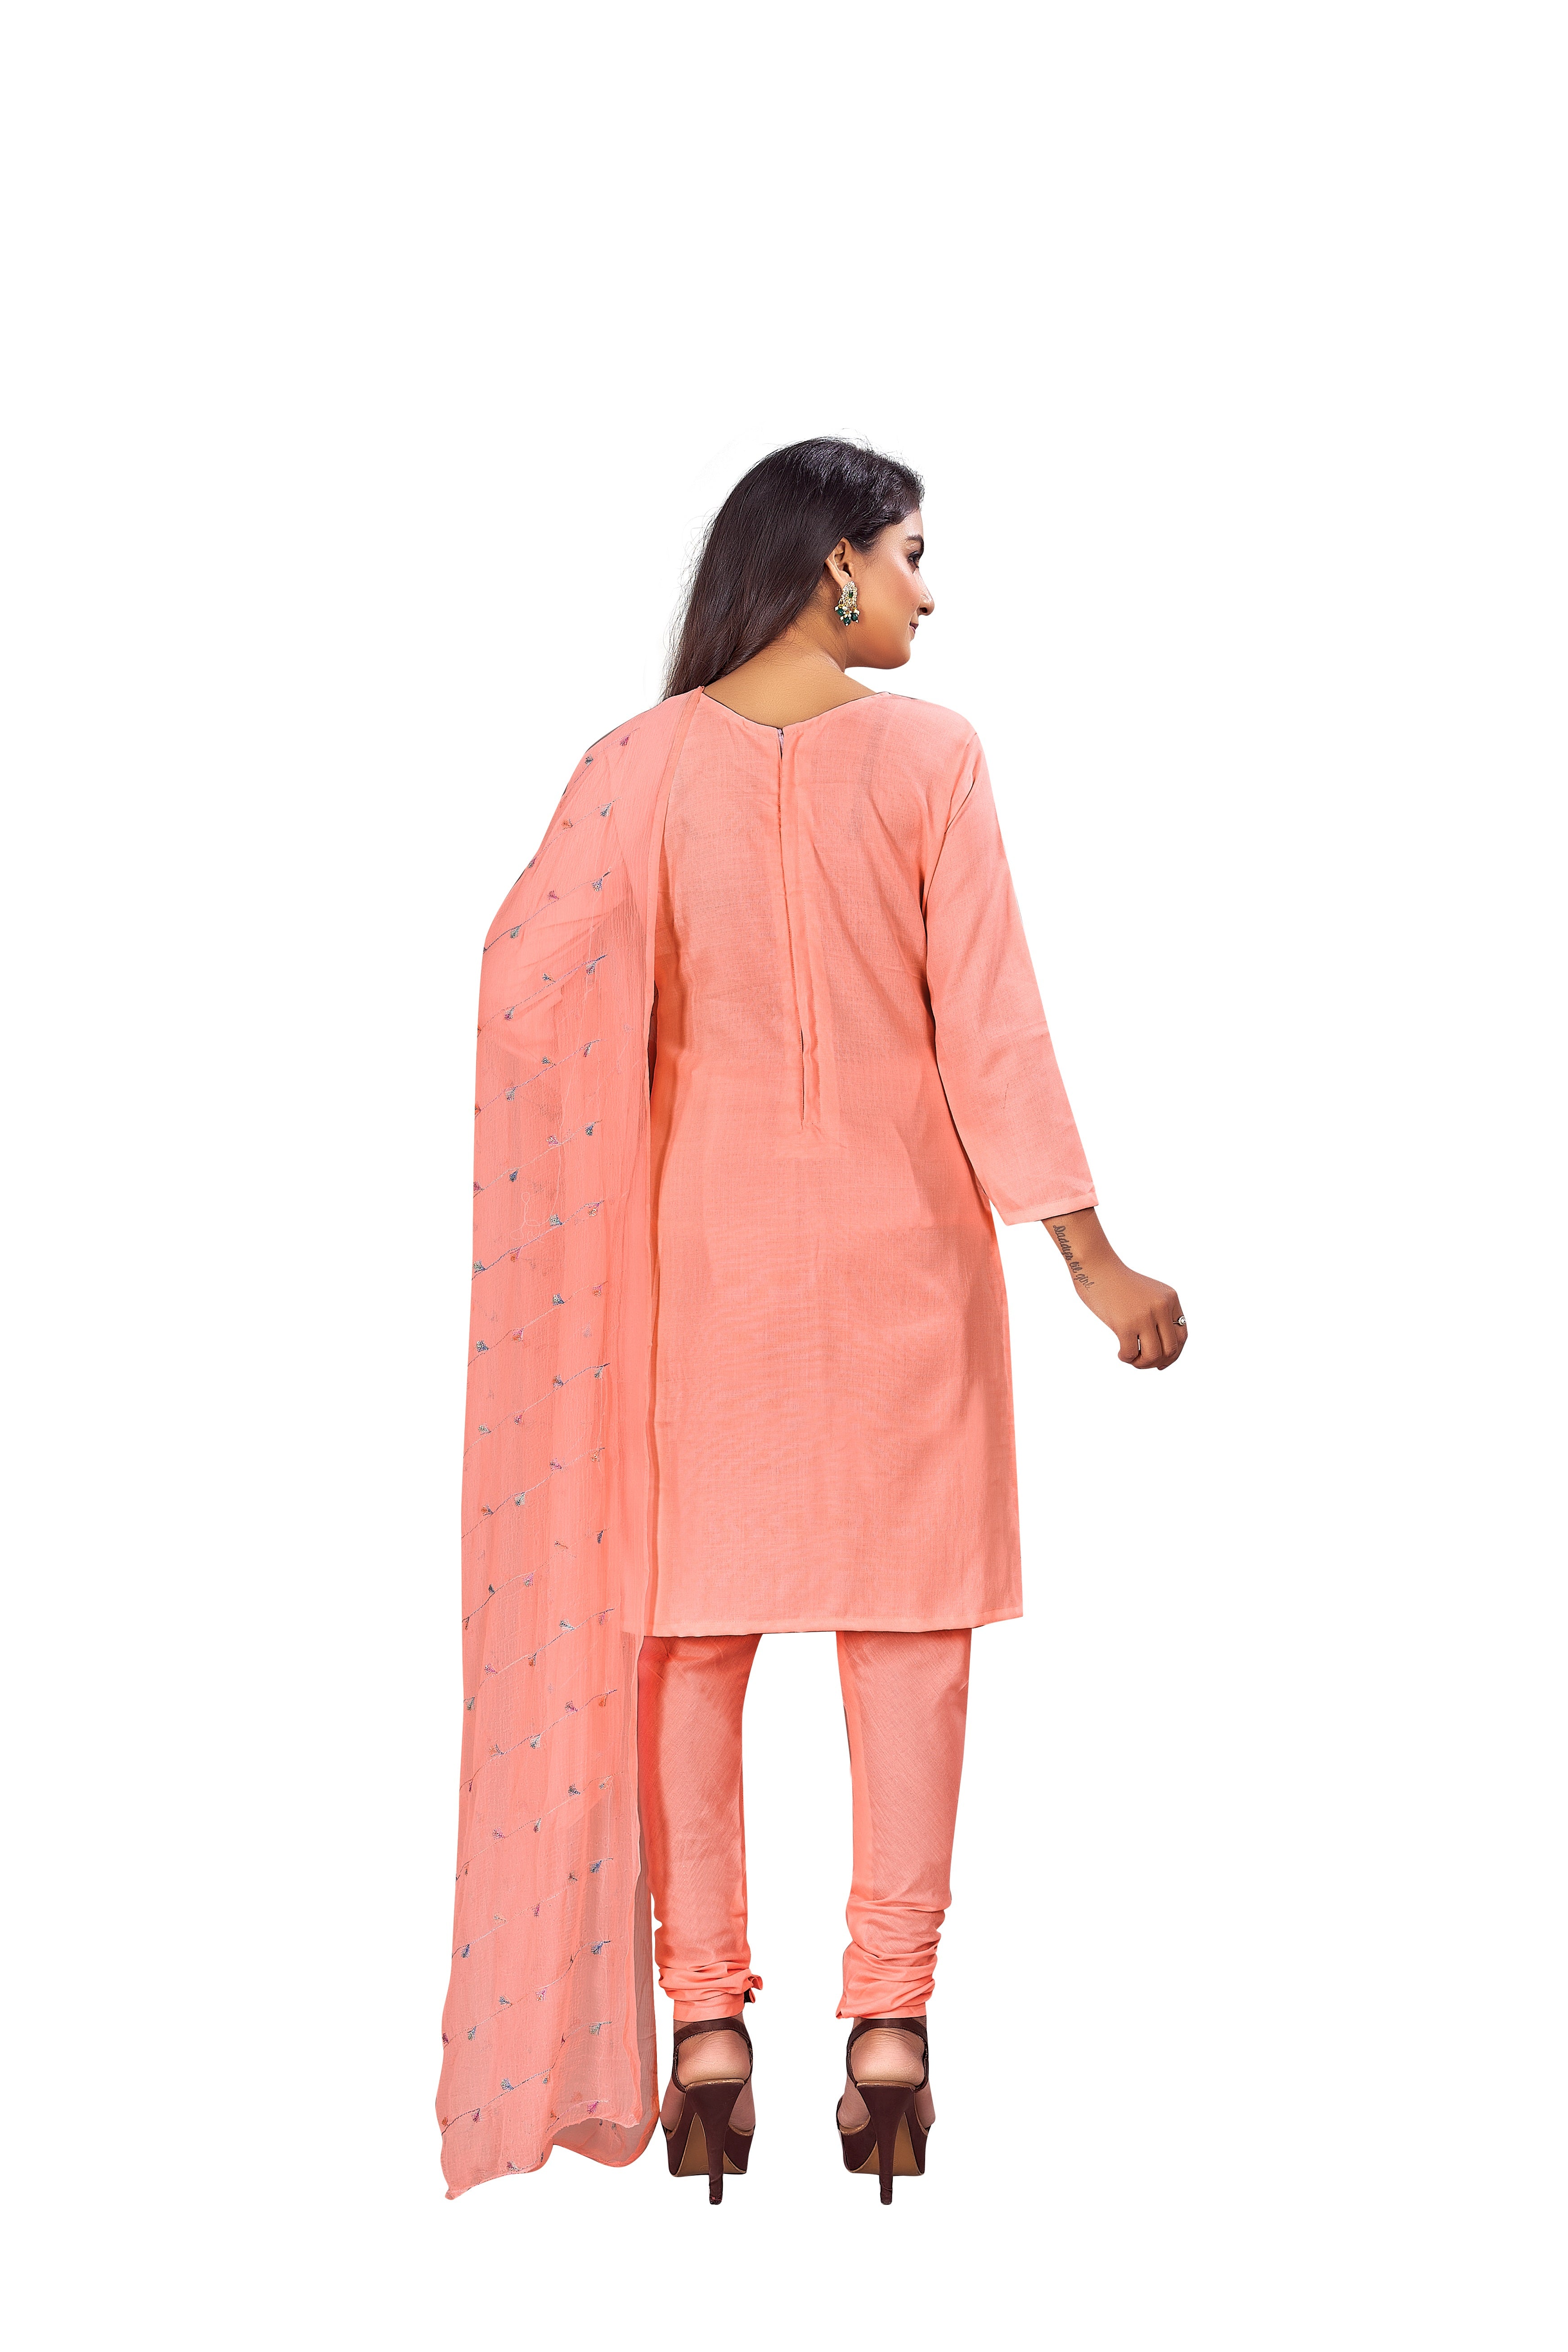 Women's Peach Colour Semi-Stitched Suit Sets - Dwija Fashion